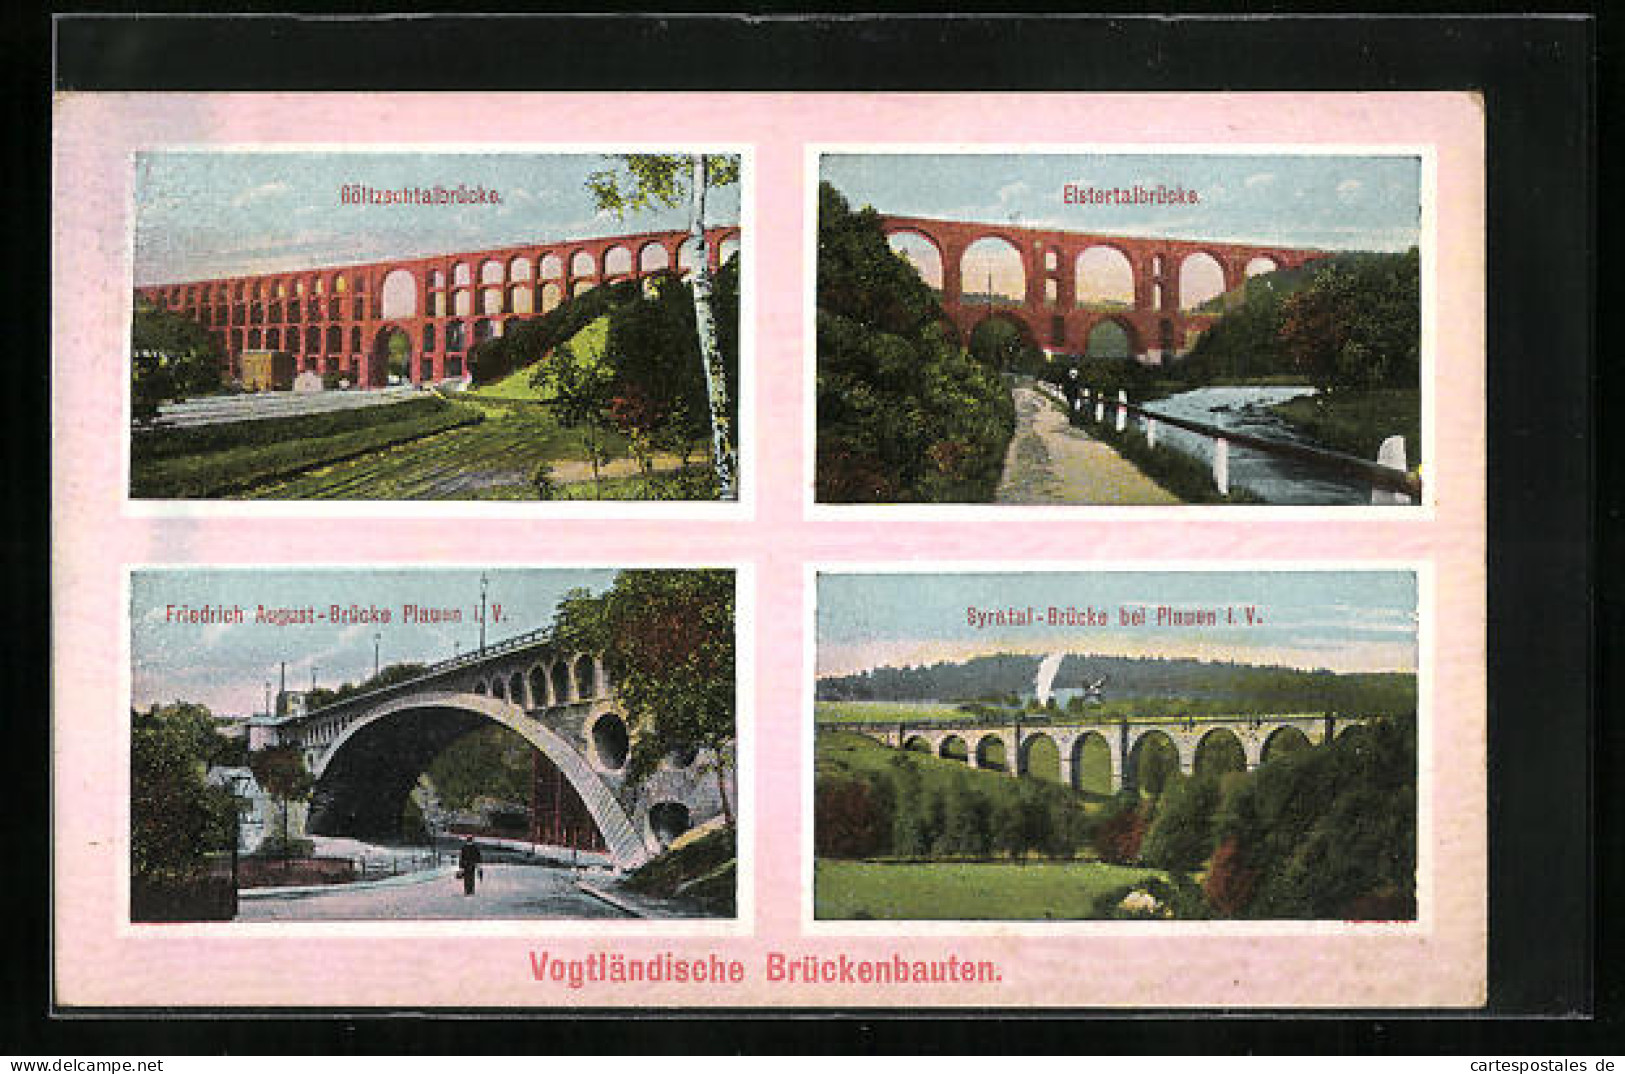 AK Plauen I. V., Vogtländischen Brückenbauten, Brücke Im Syratal, Friedrich August-Brücke, Göltzschtalbrücke  - Plauen